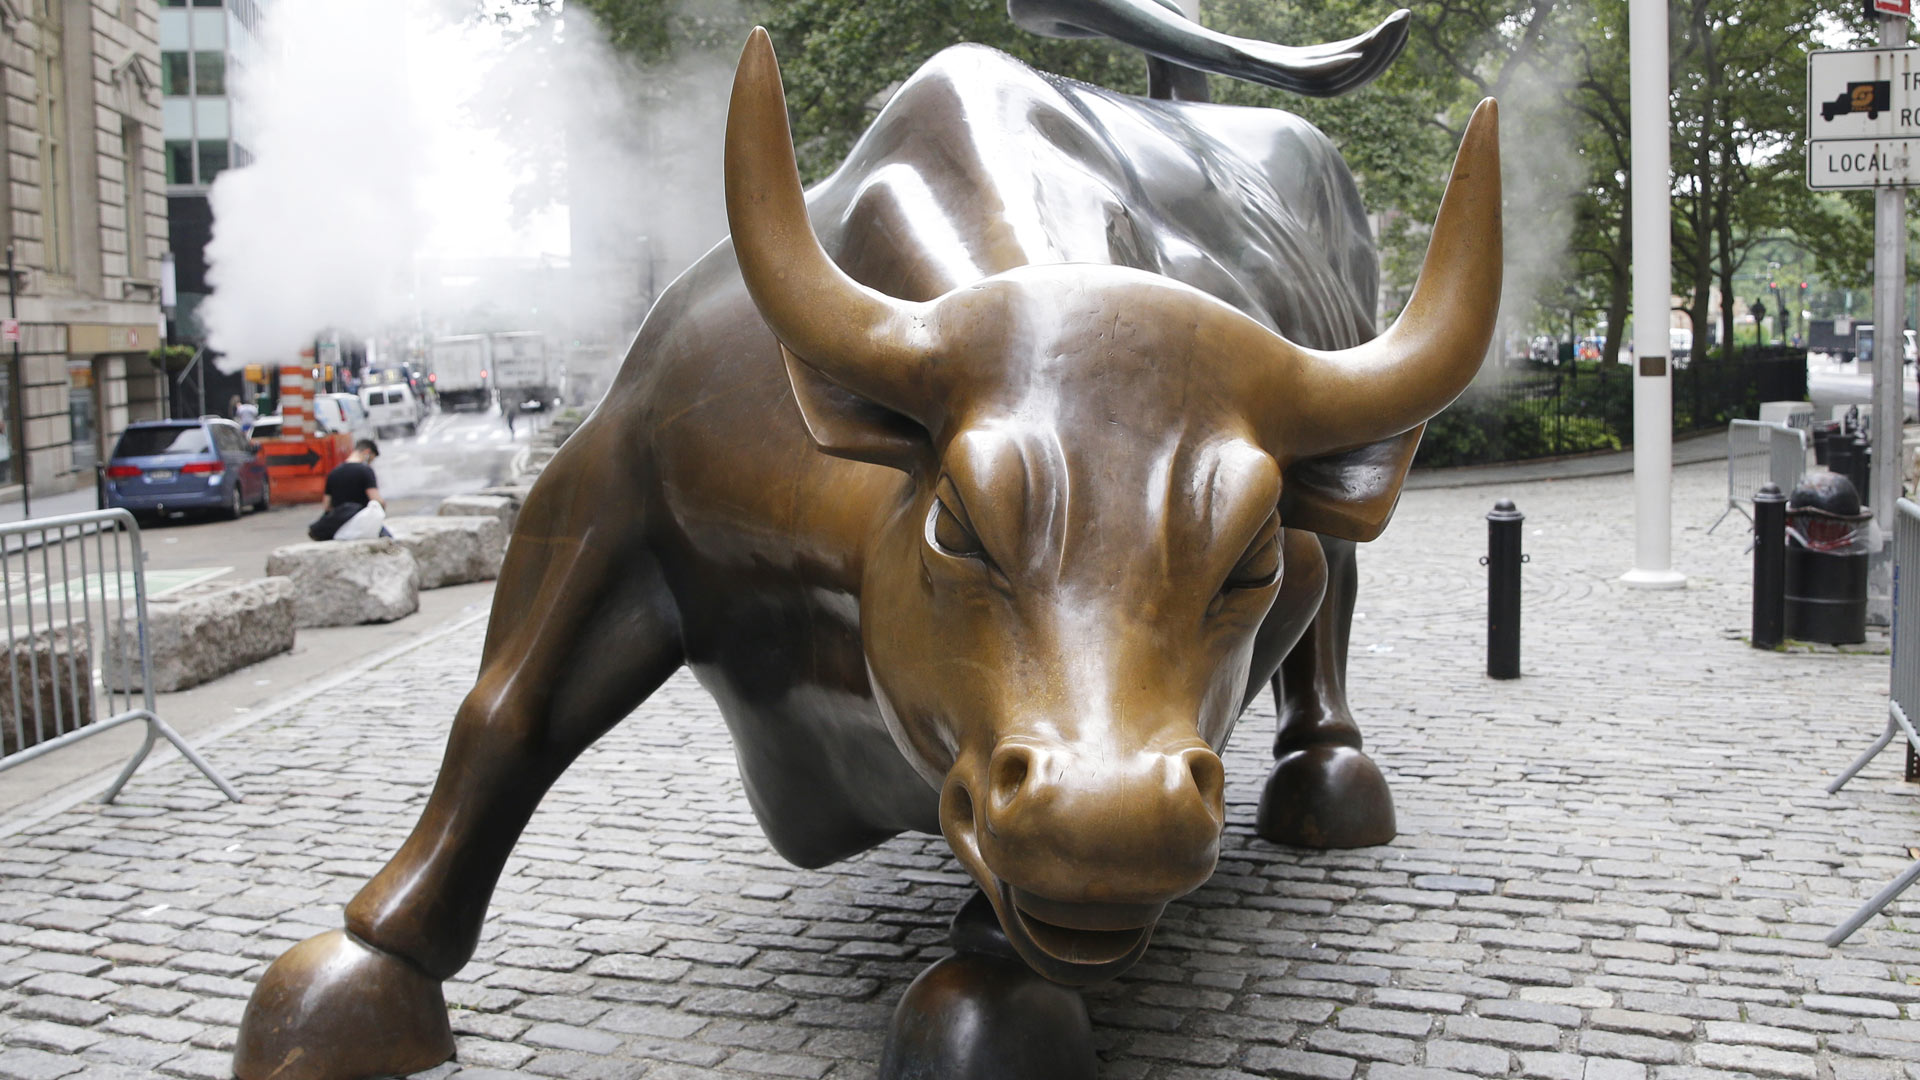 Bullenskulptur an der Wall Street in New York City